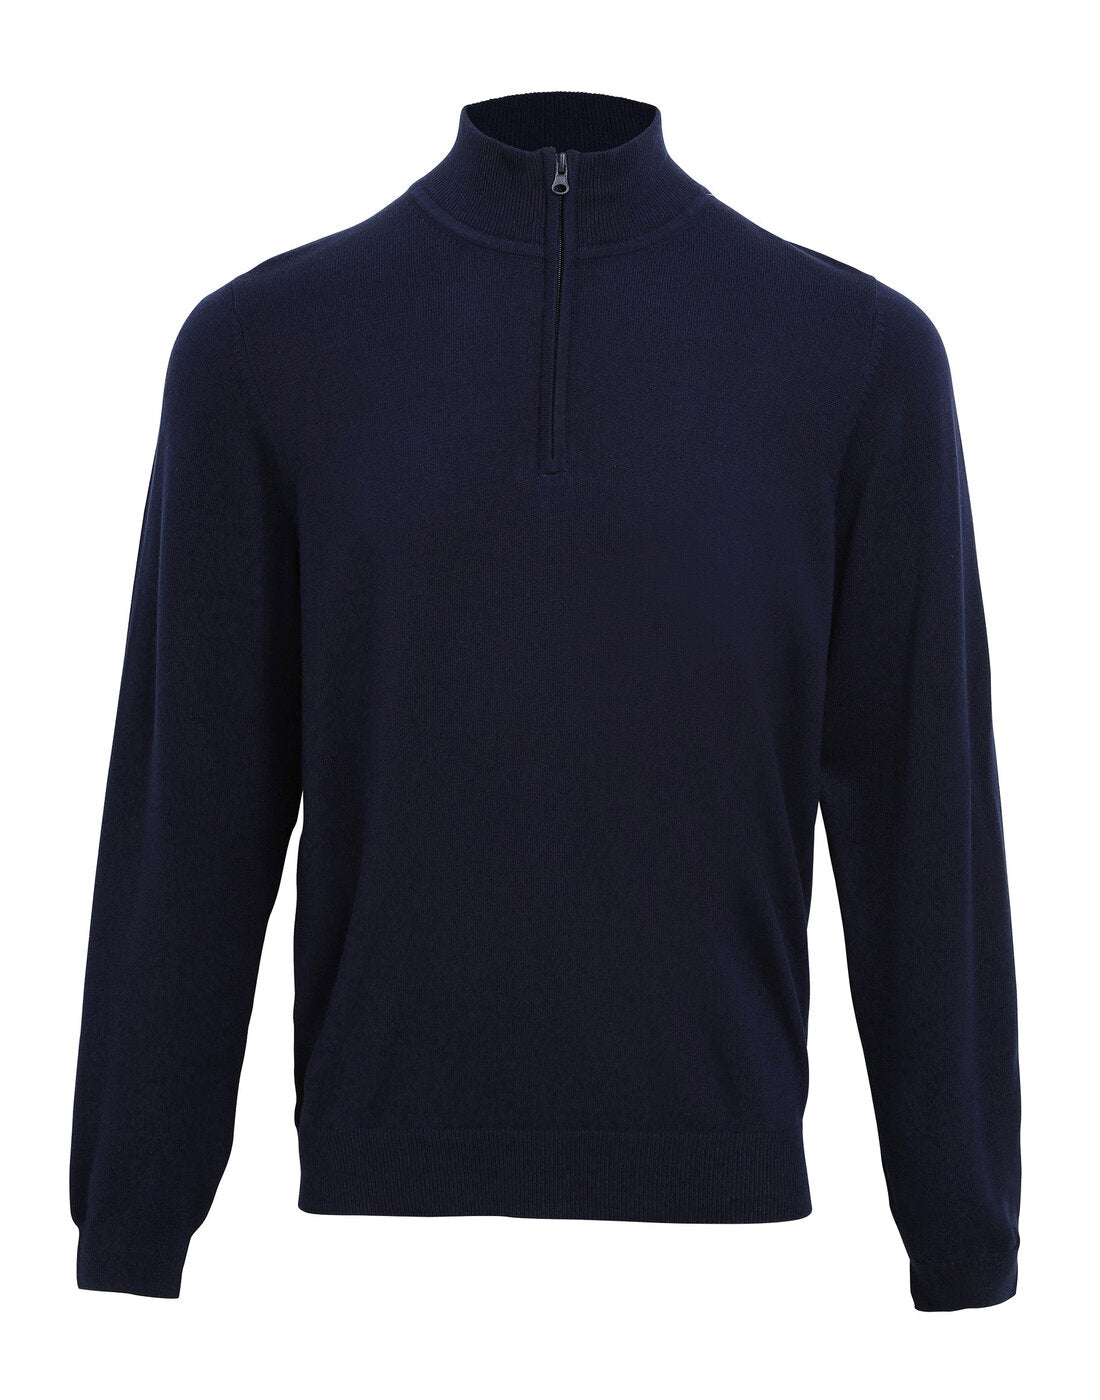 Premier Men's Quarter-Zip Knitted Sweater